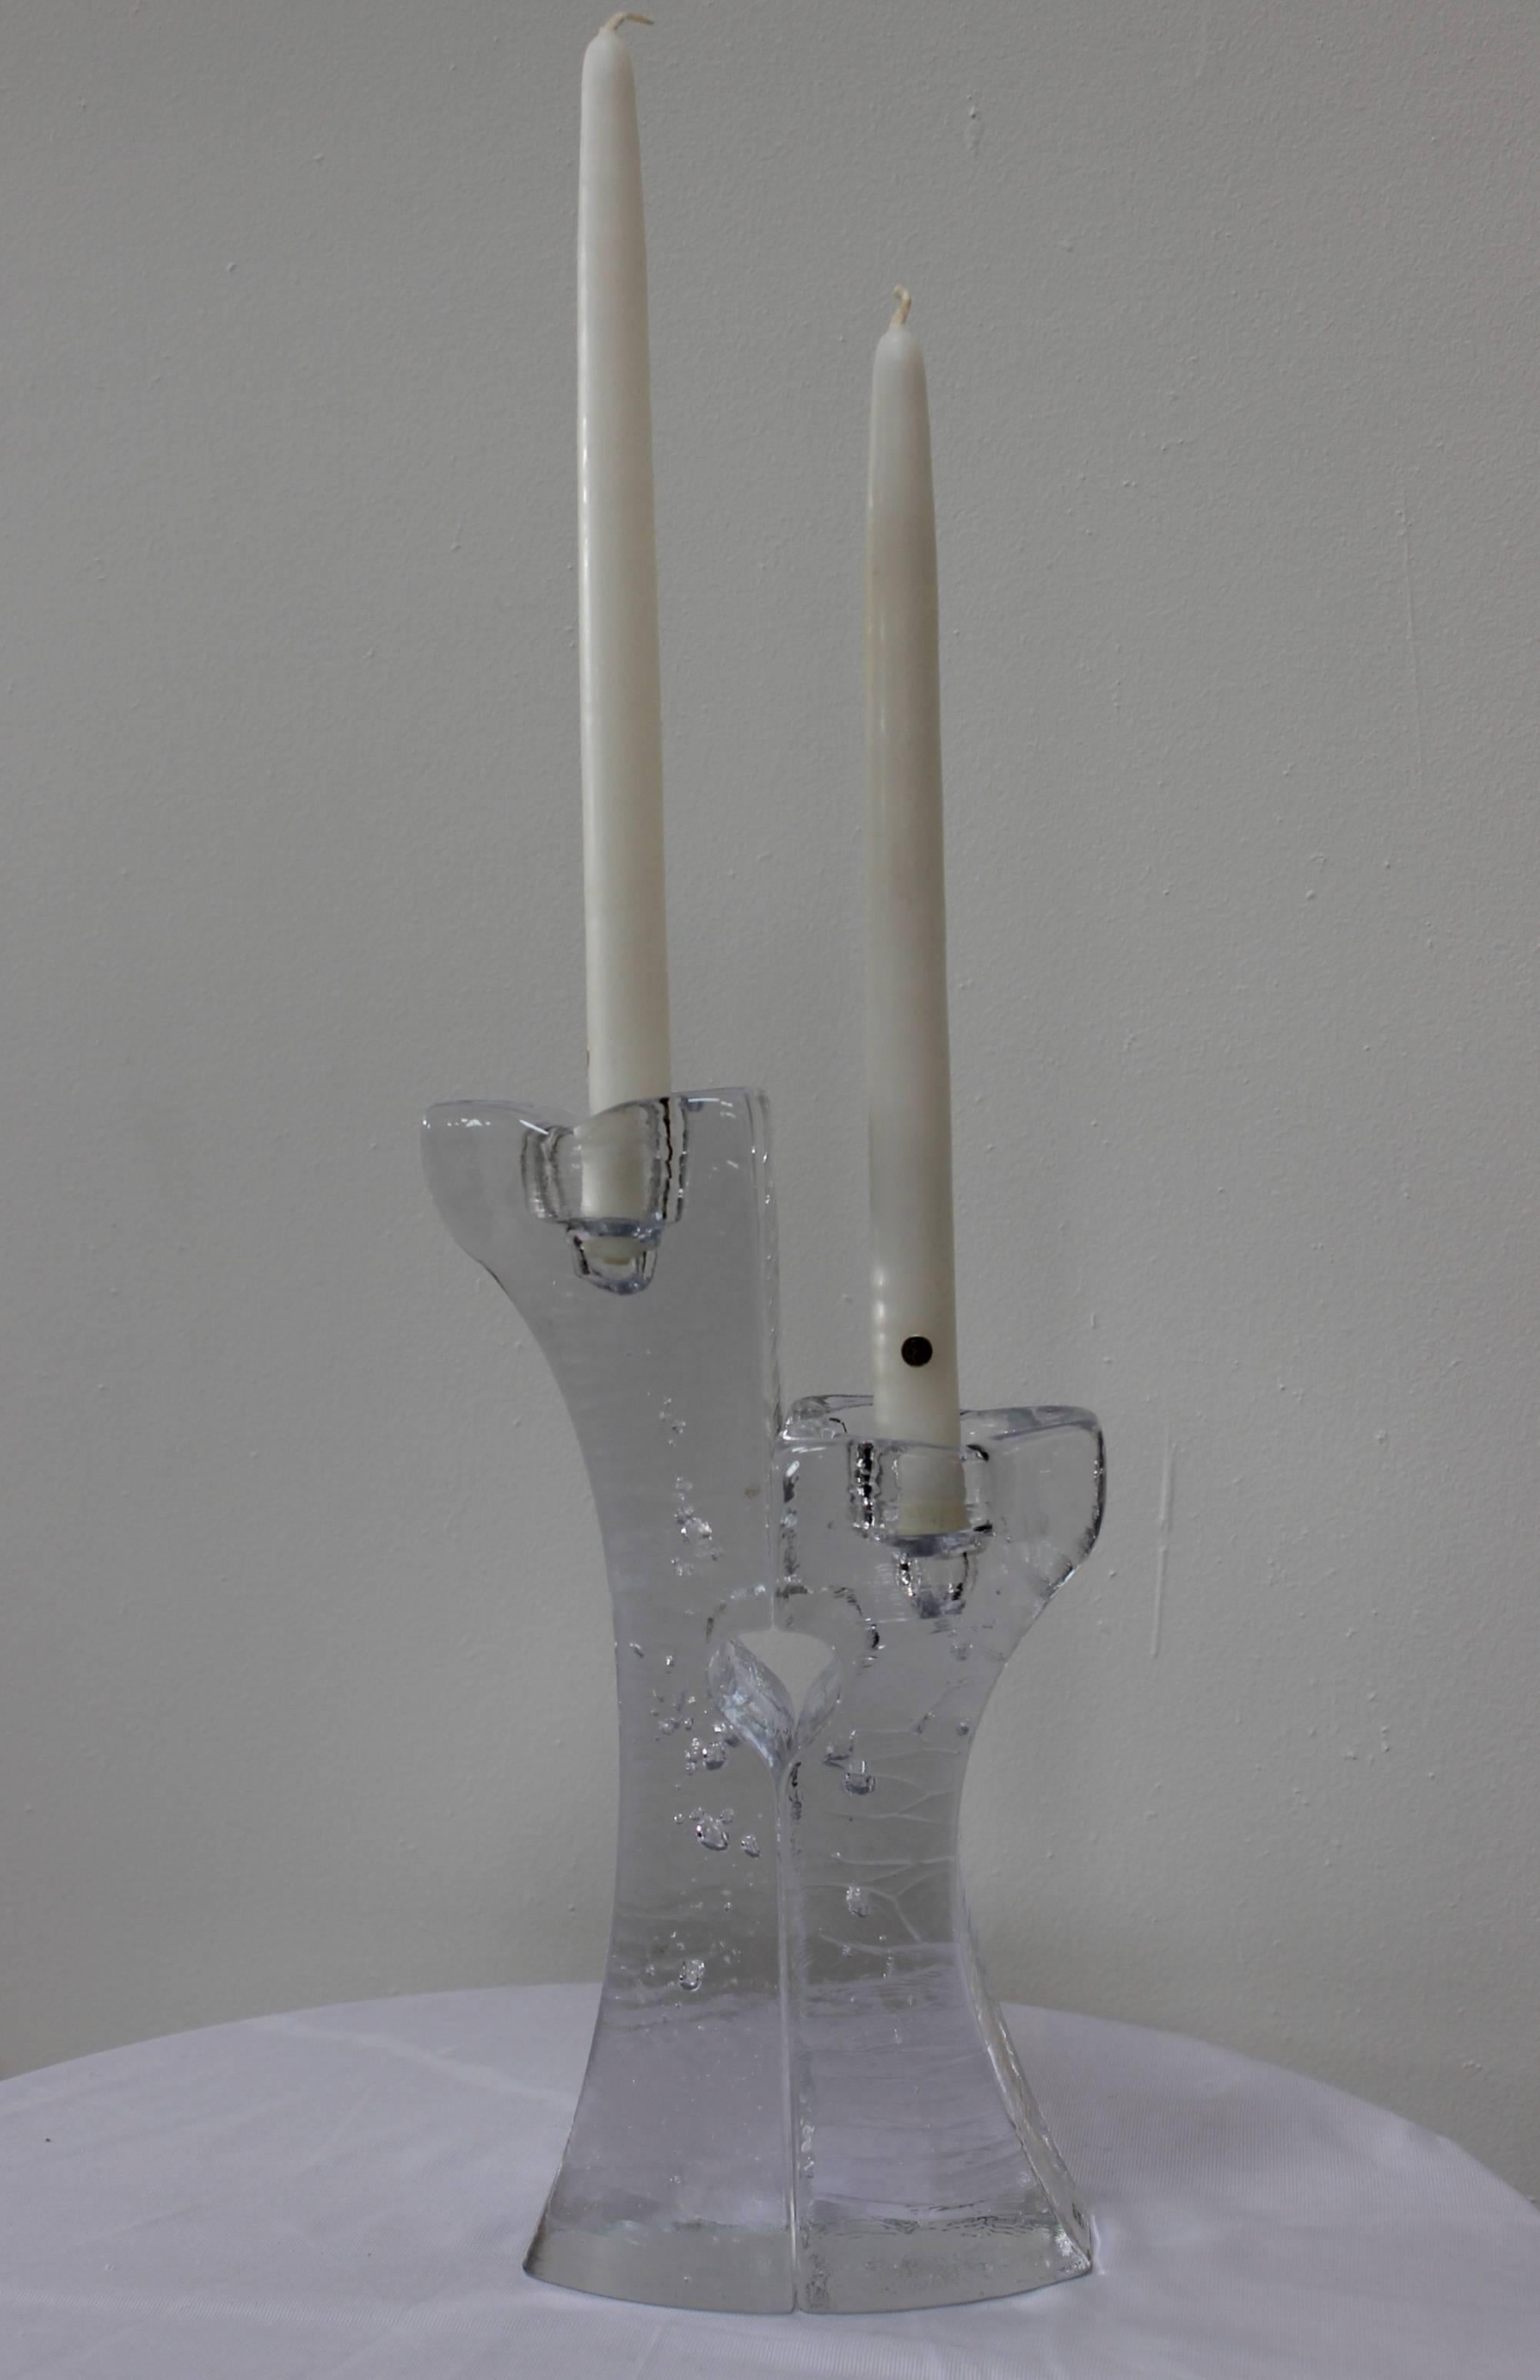 Moderne Kerzenhalter aus Glas aus den 1970er Jahren von Kosta Boda.

Kleiner Kerzenhalter Breite 3'' Tiefe 3,5'' Höhe 8,5''.